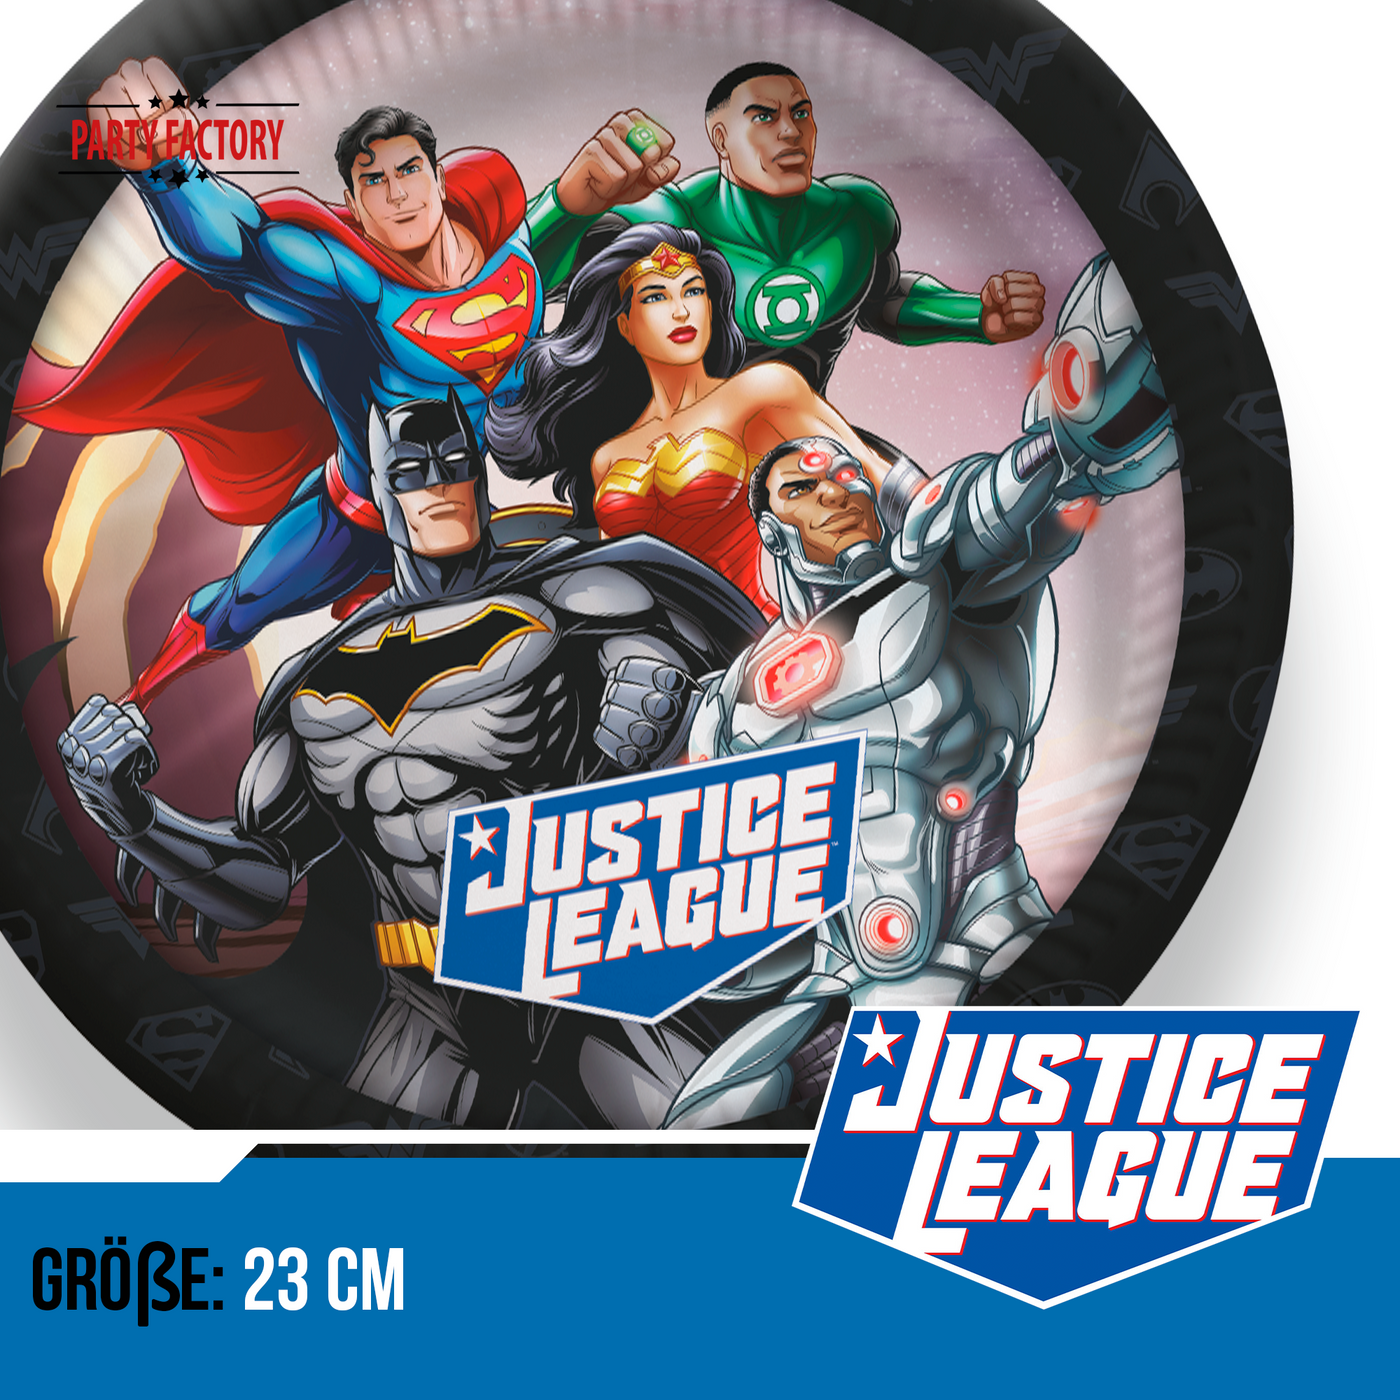 Papp-Teller Justice League, 23 cm, 10 Stück